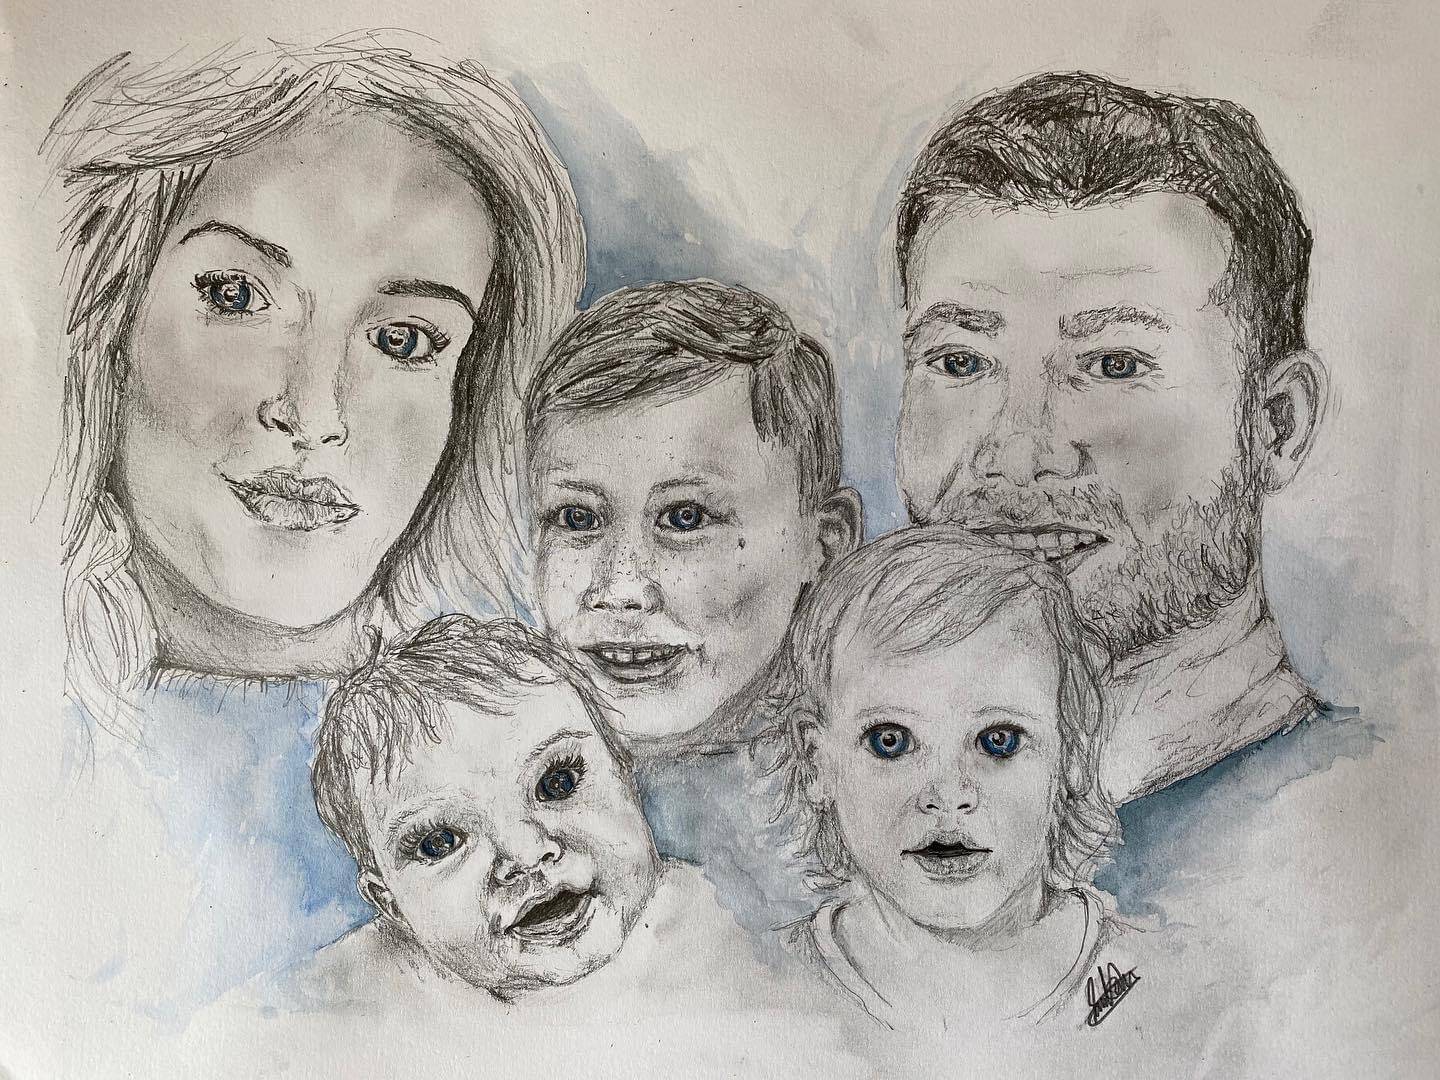 Pencil family portrait commission